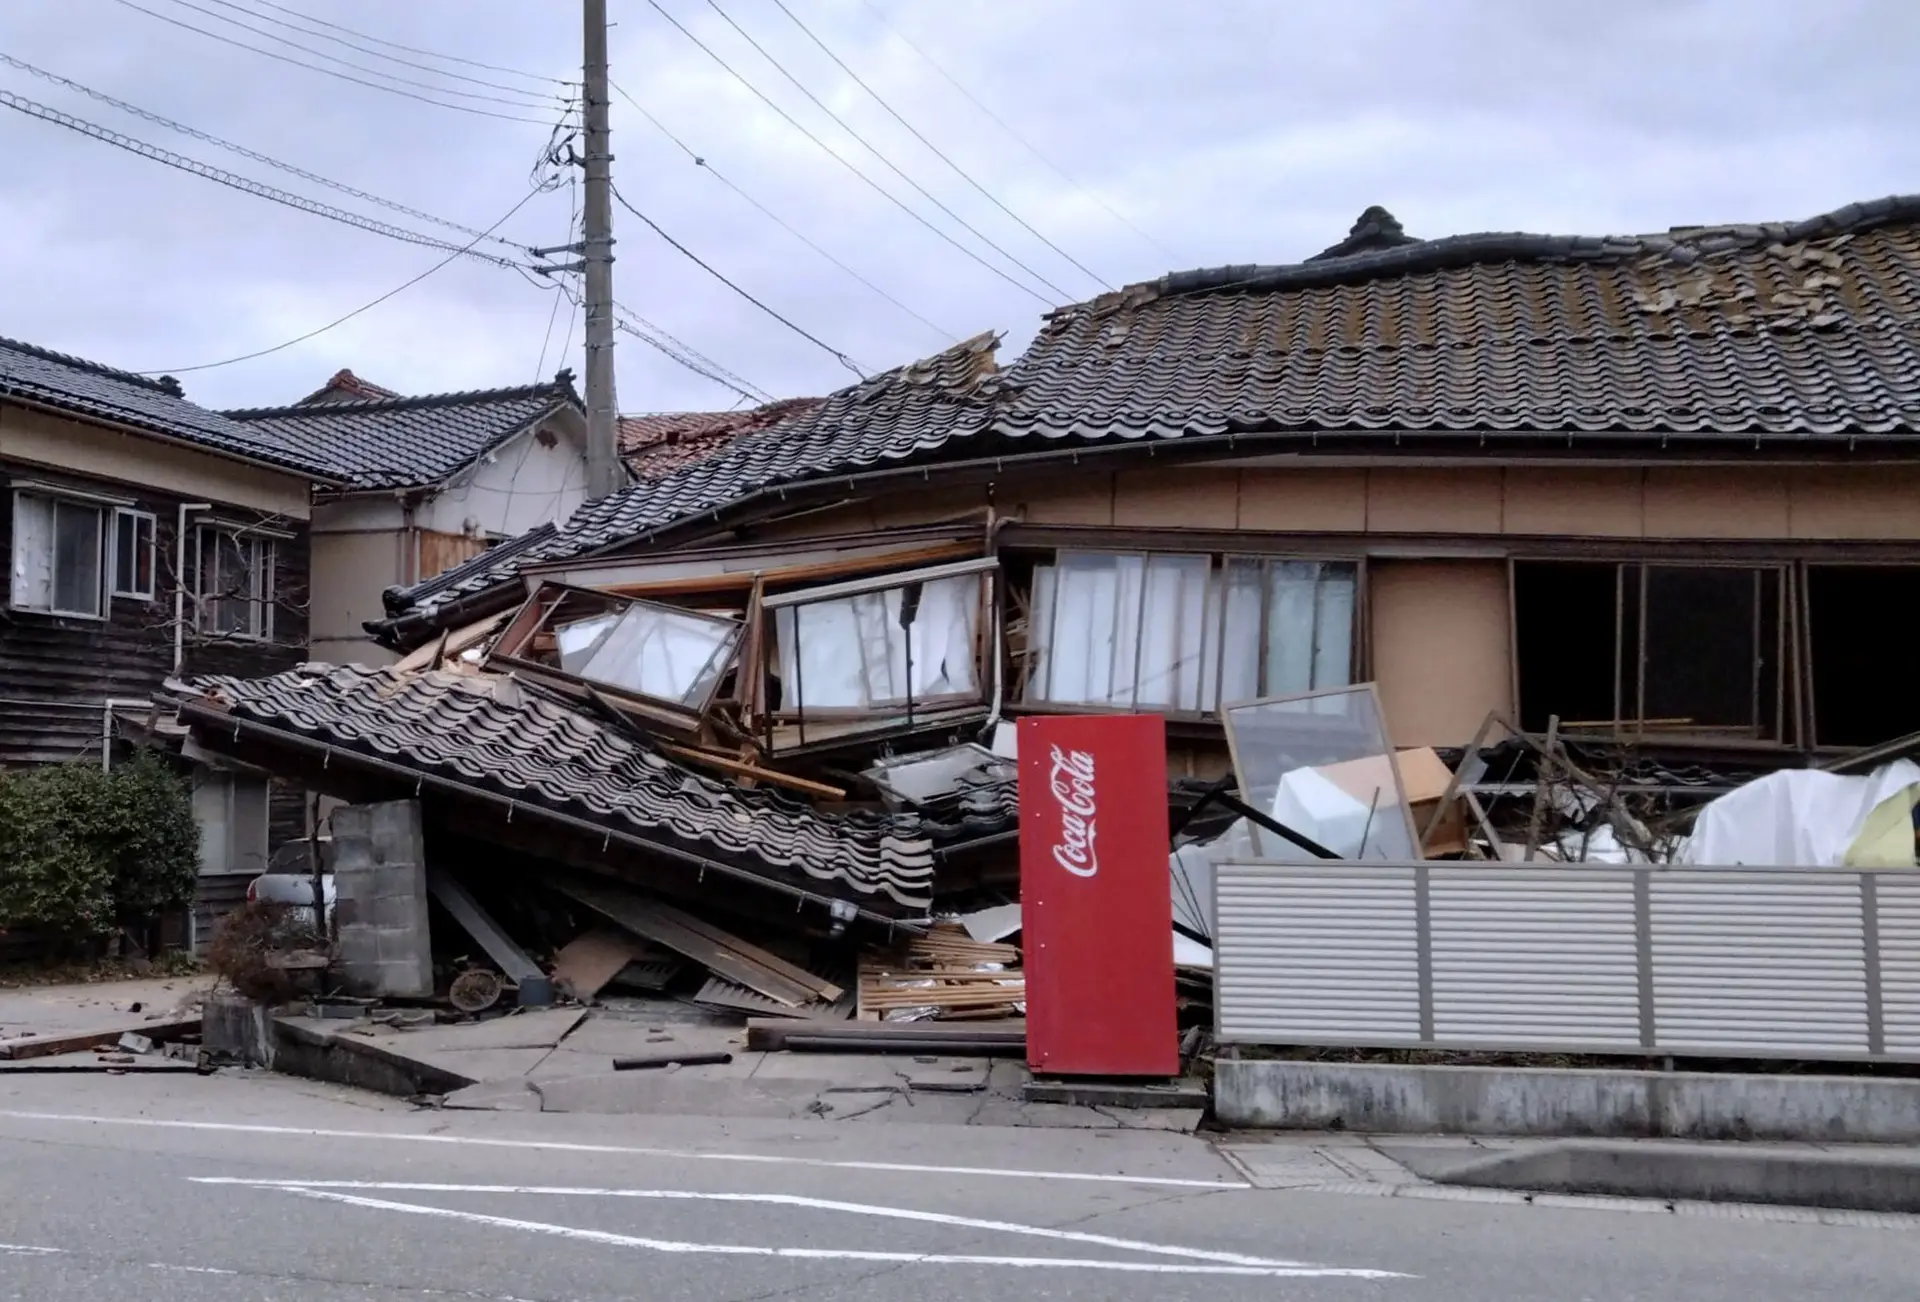 Seis pessoas sob os escombros na sequência do sismo no Japão